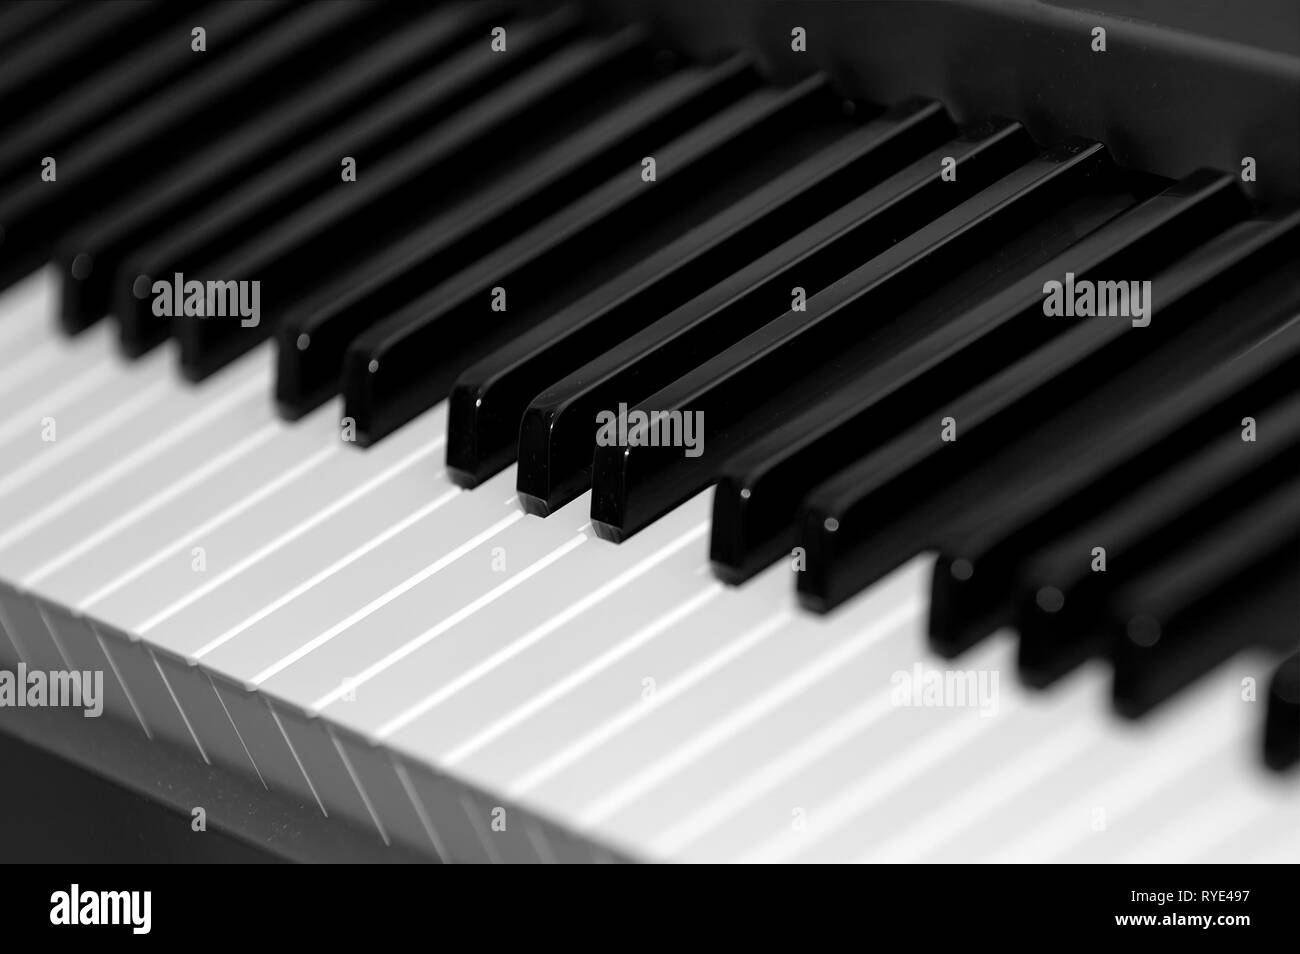 Le noir et blanc des touches de piano électrique Banque D'Images